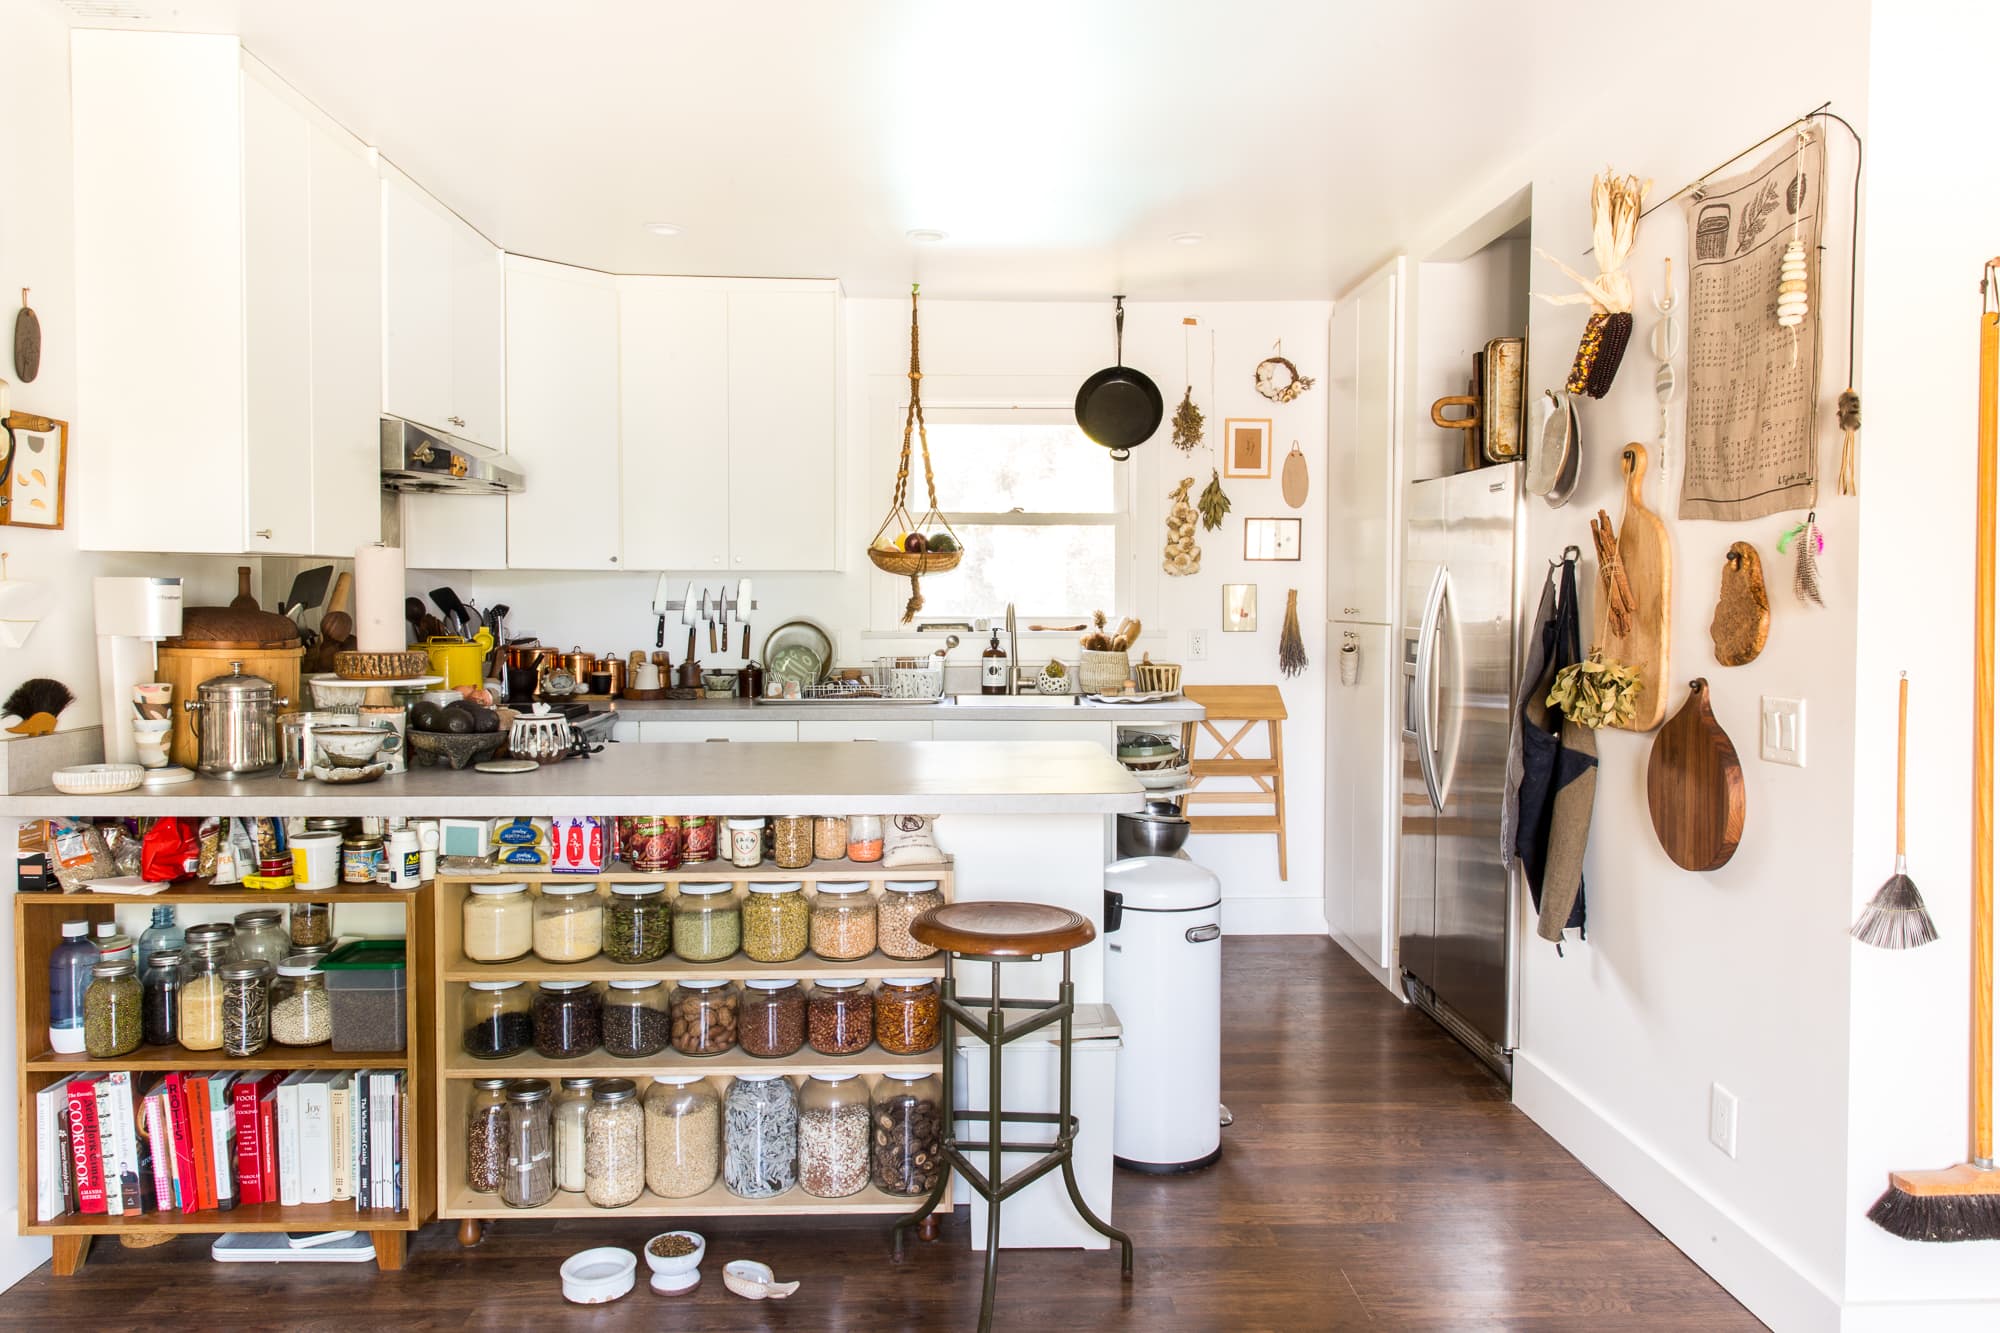 20 Best Small Kitchen Storage & Design Ideas   Kitchn